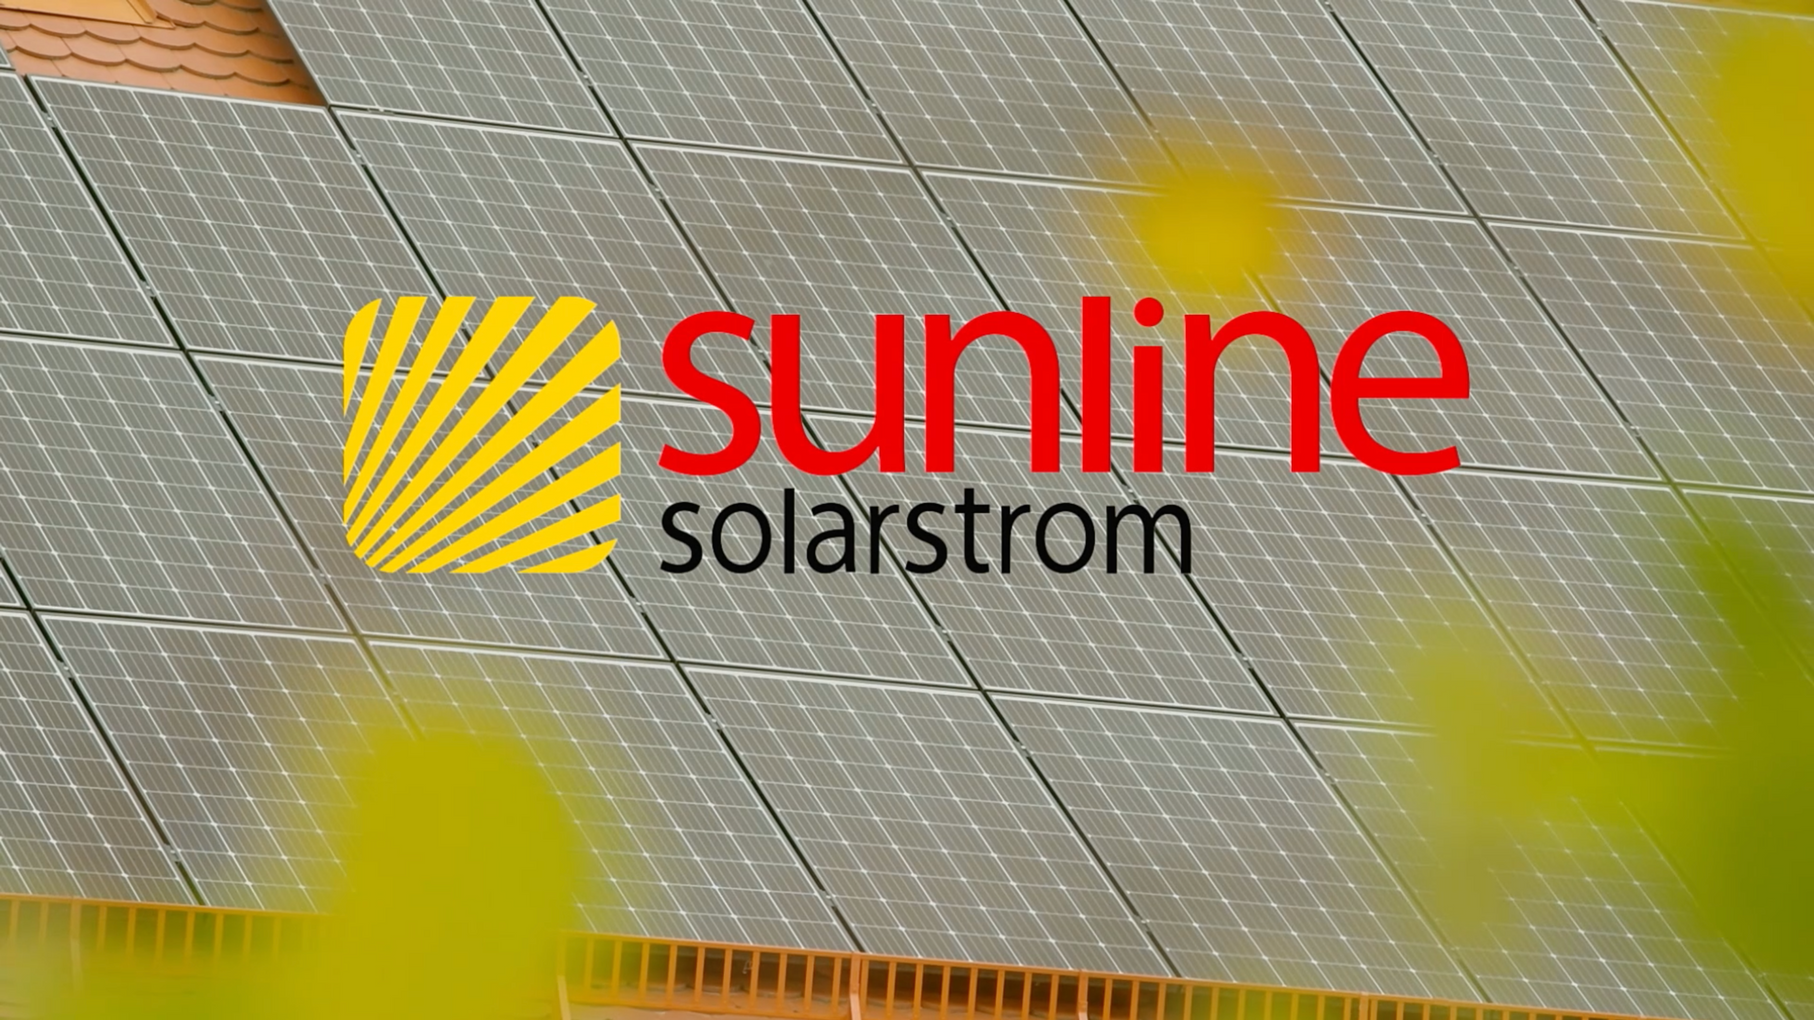 Sunline Solarstrom Trailer